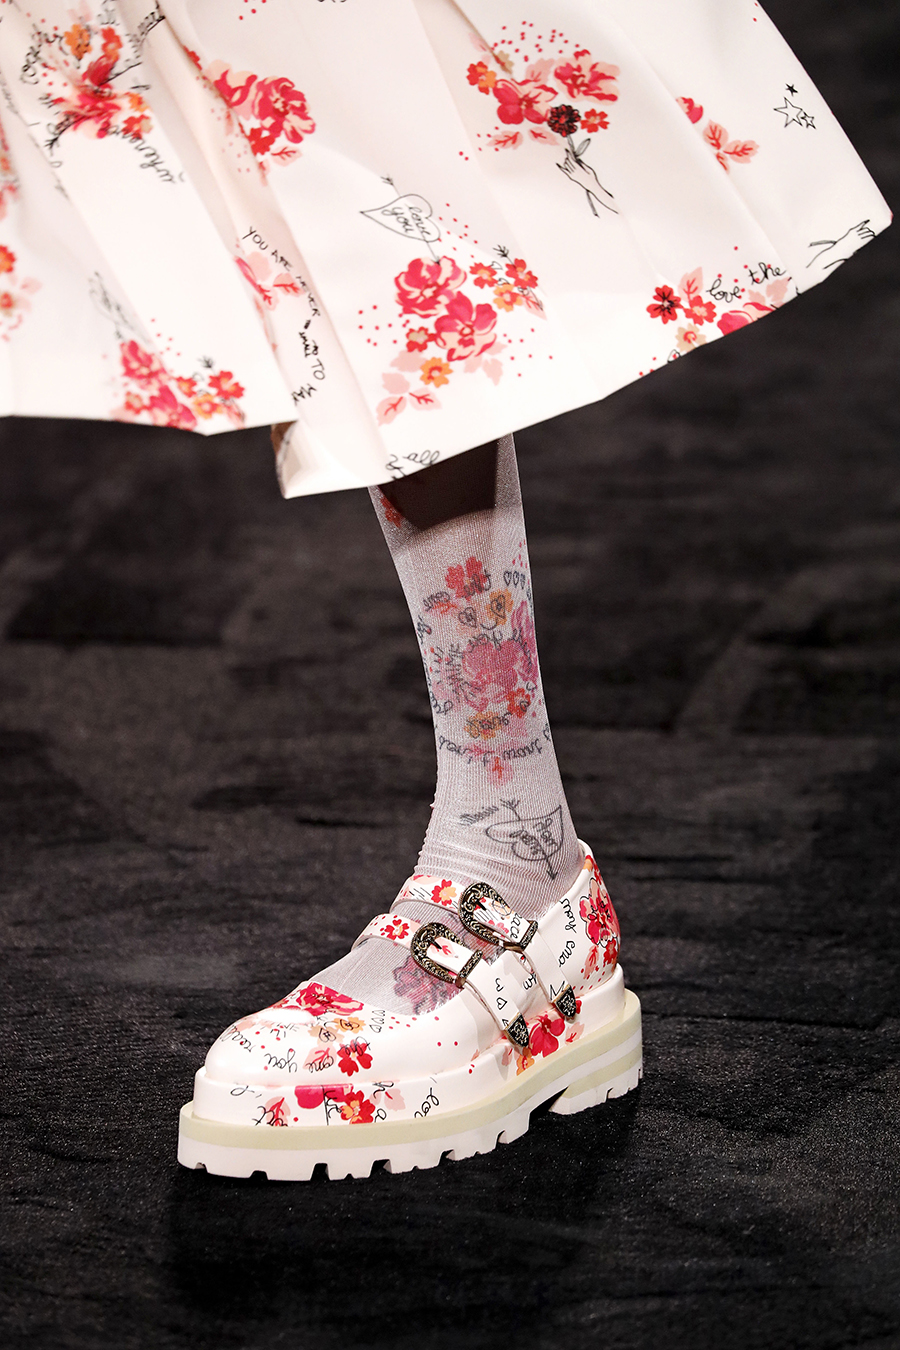 самая модная обувь осень 2020 туфли ботинки сапоги с принтами вышивка цветы